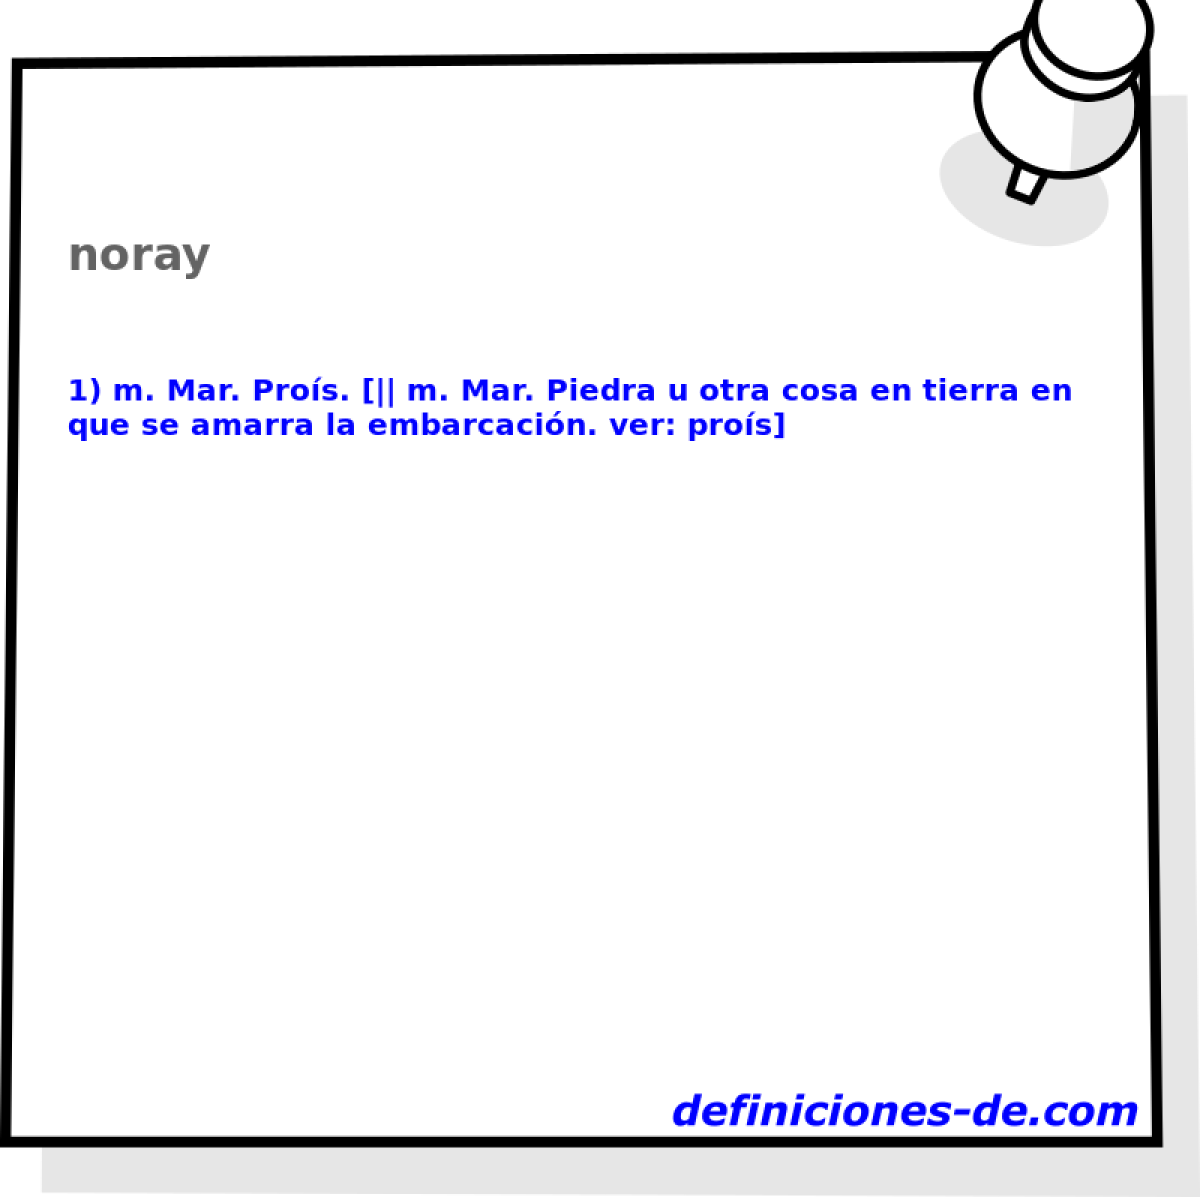 noray 